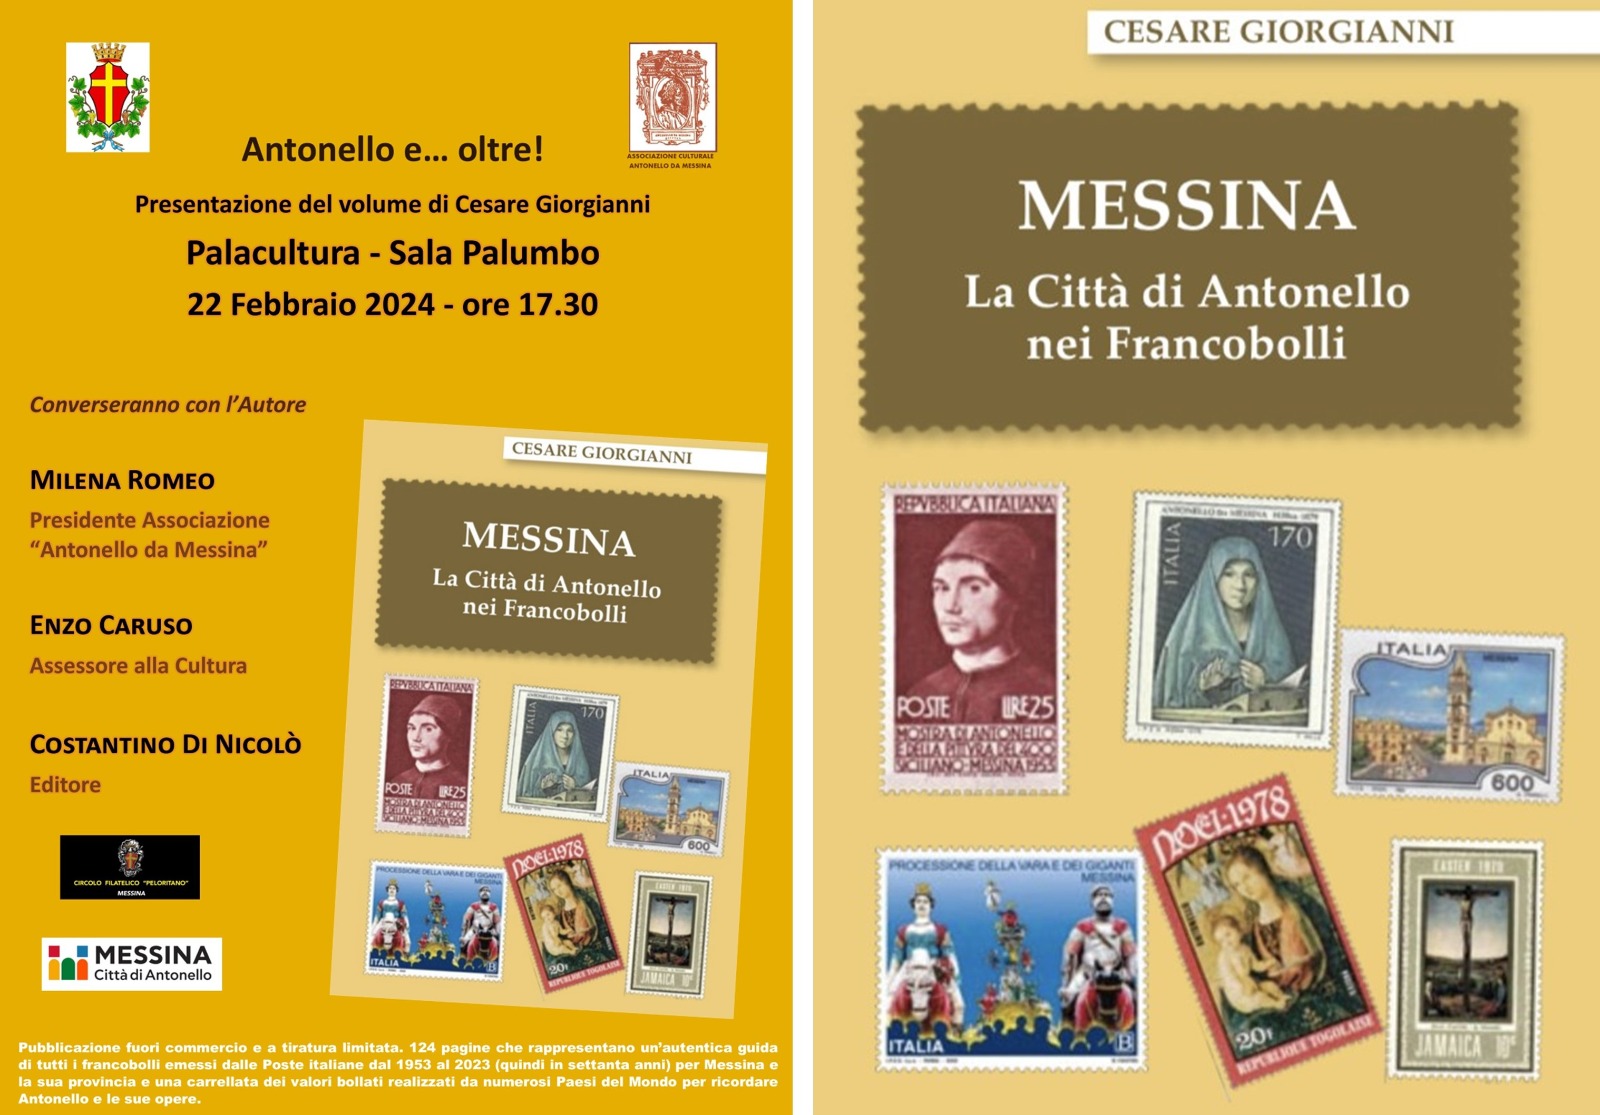 Giovedì 22 al Palacultura Antonello presentazione del volume "Messina La Città di Antonello nei Francobolli"